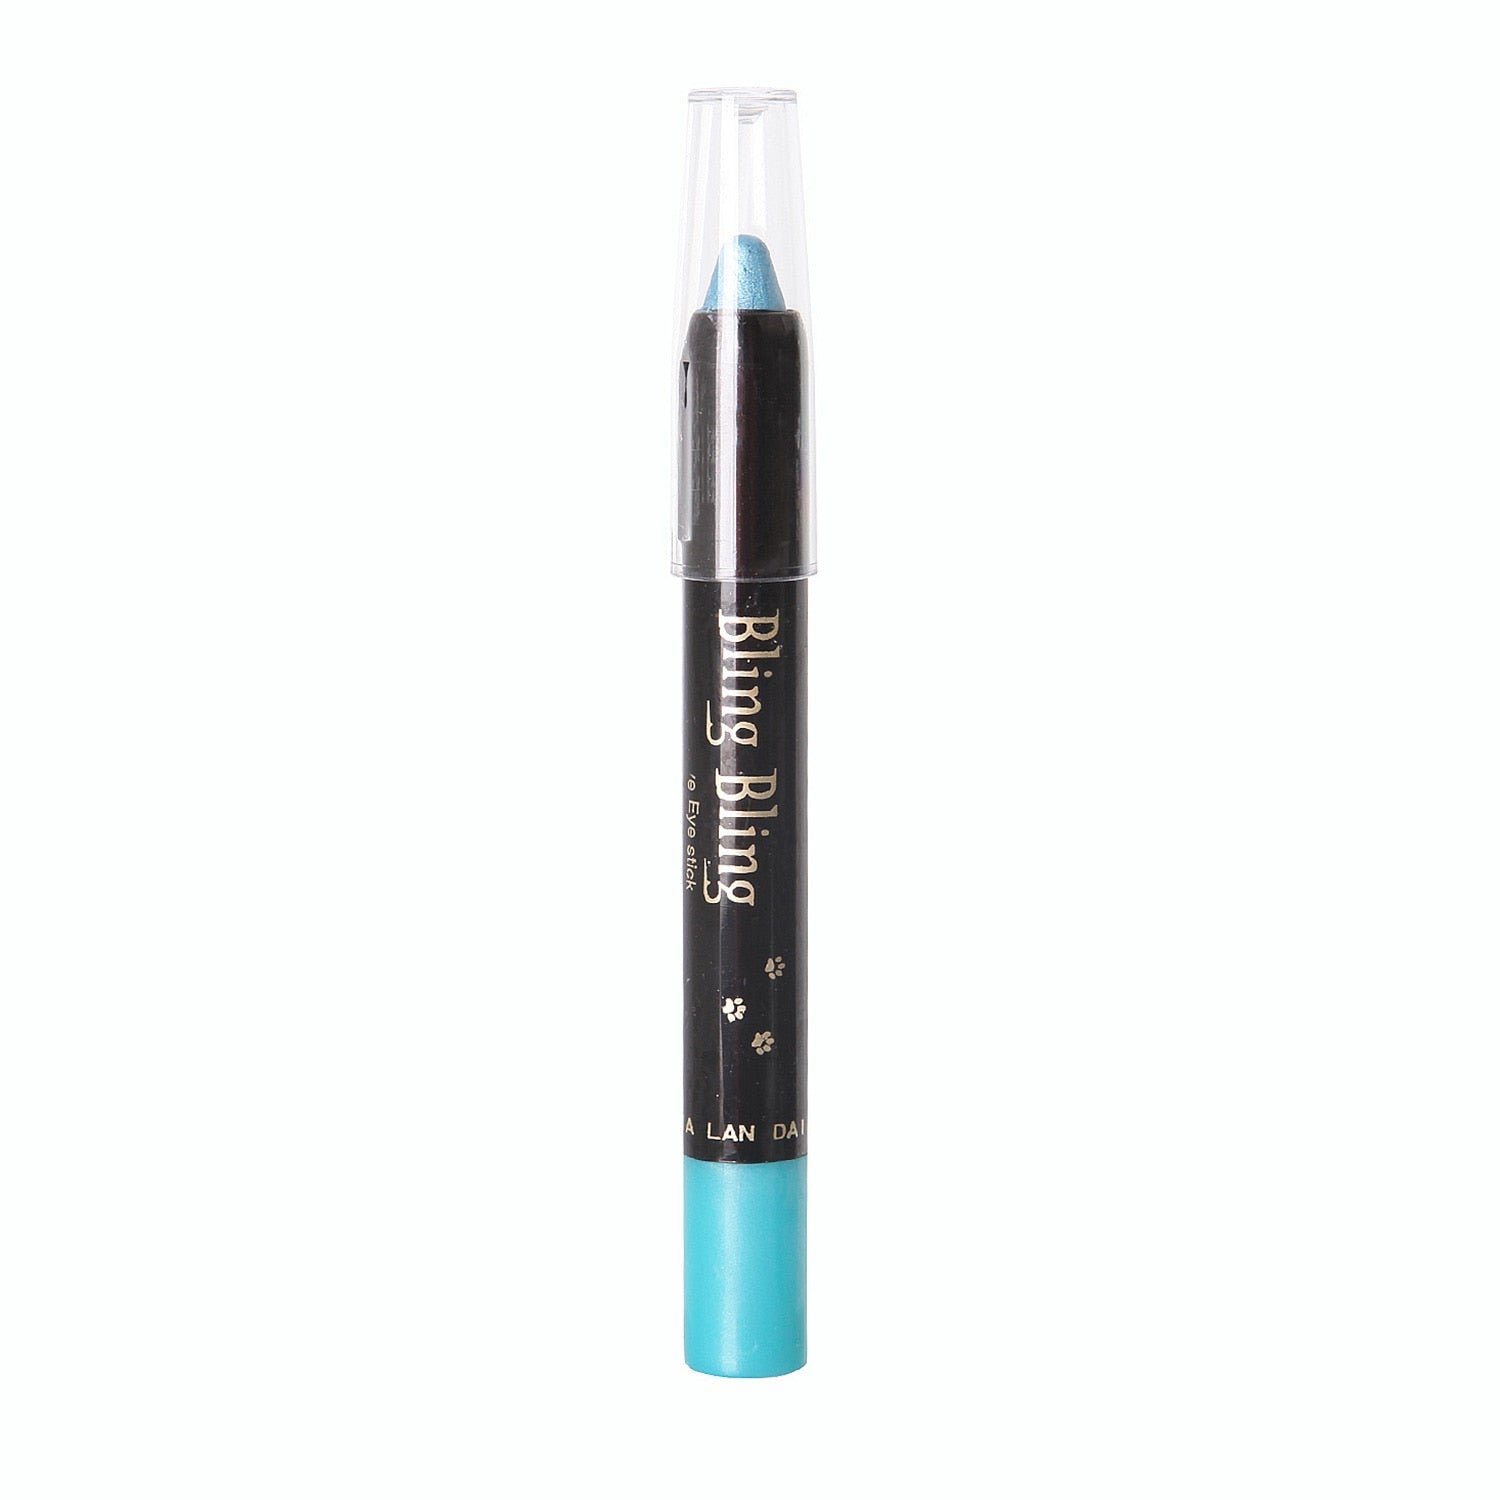 15 Colors Pearlescent Eyeshadow Pencil Waterproof Long Lasting Glitter Shimmer Eye Shadow Pen Eyeliner Stick Eyes Makeup Tools